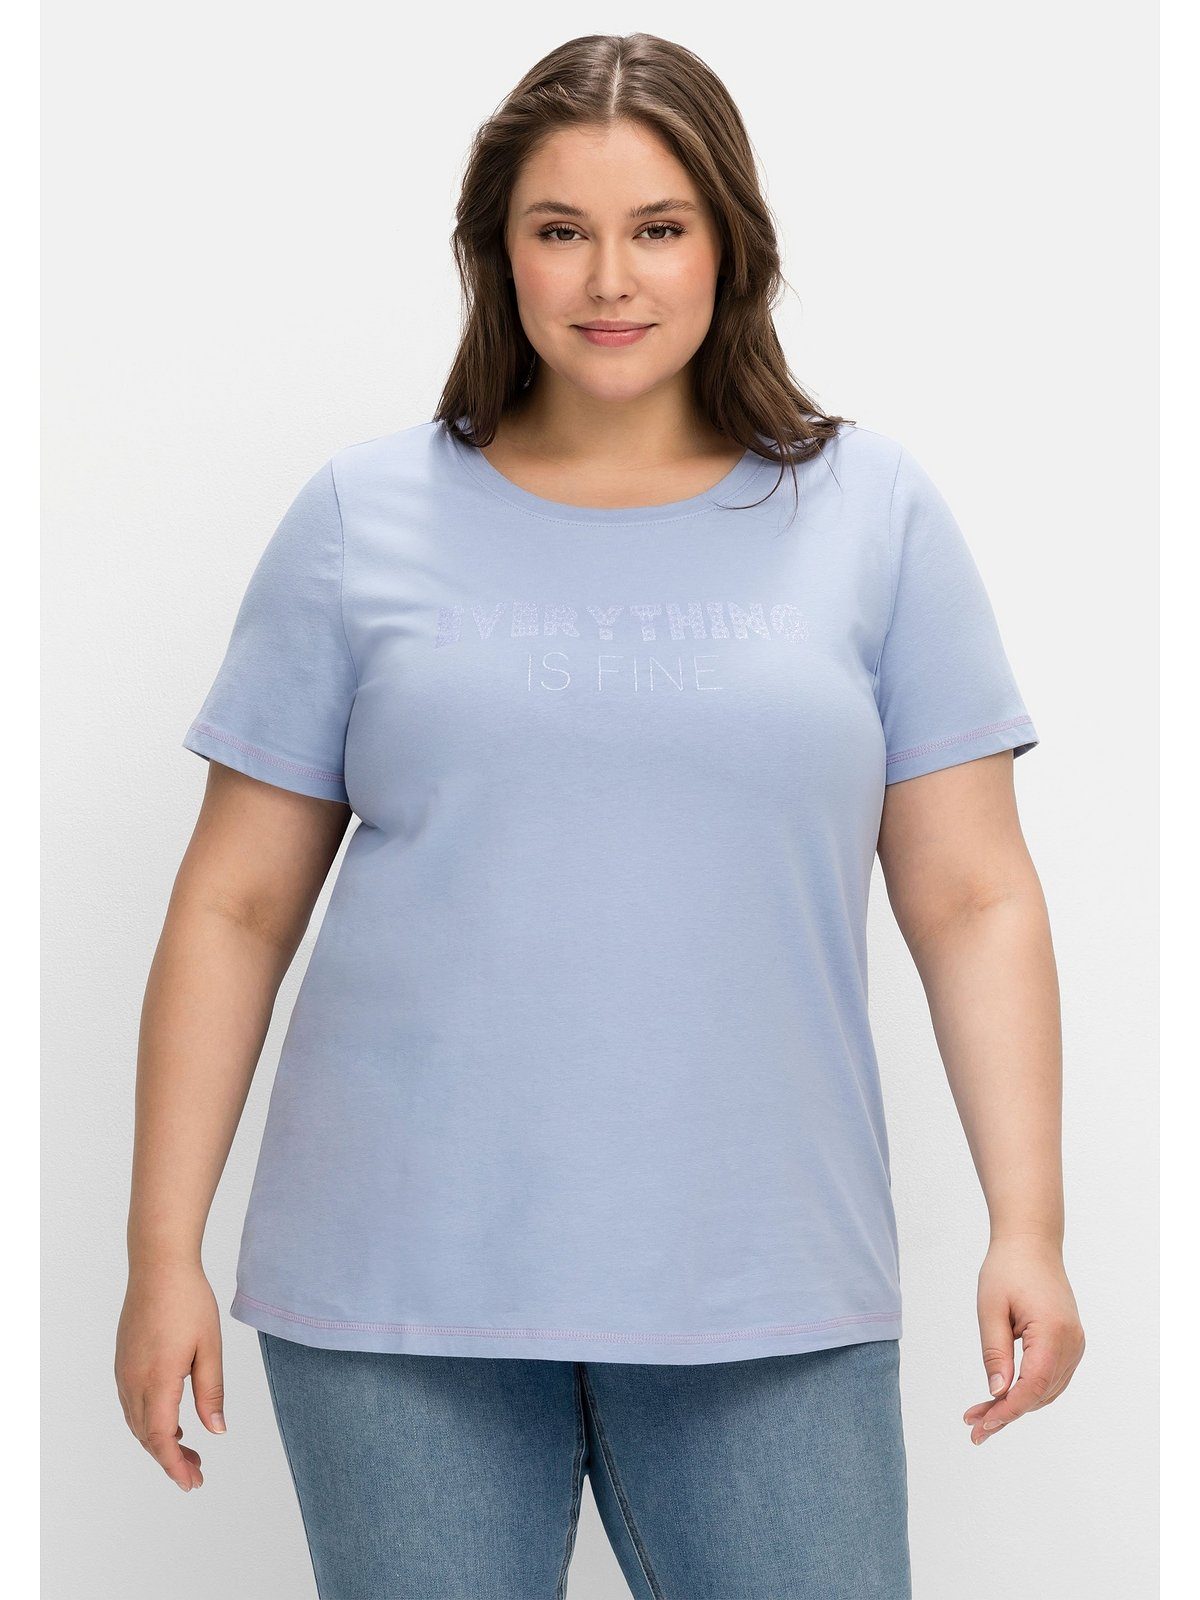 bedruckt mittelblau Große Wordingprint, T-Shirt mit tailliert leicht Sheego Größen